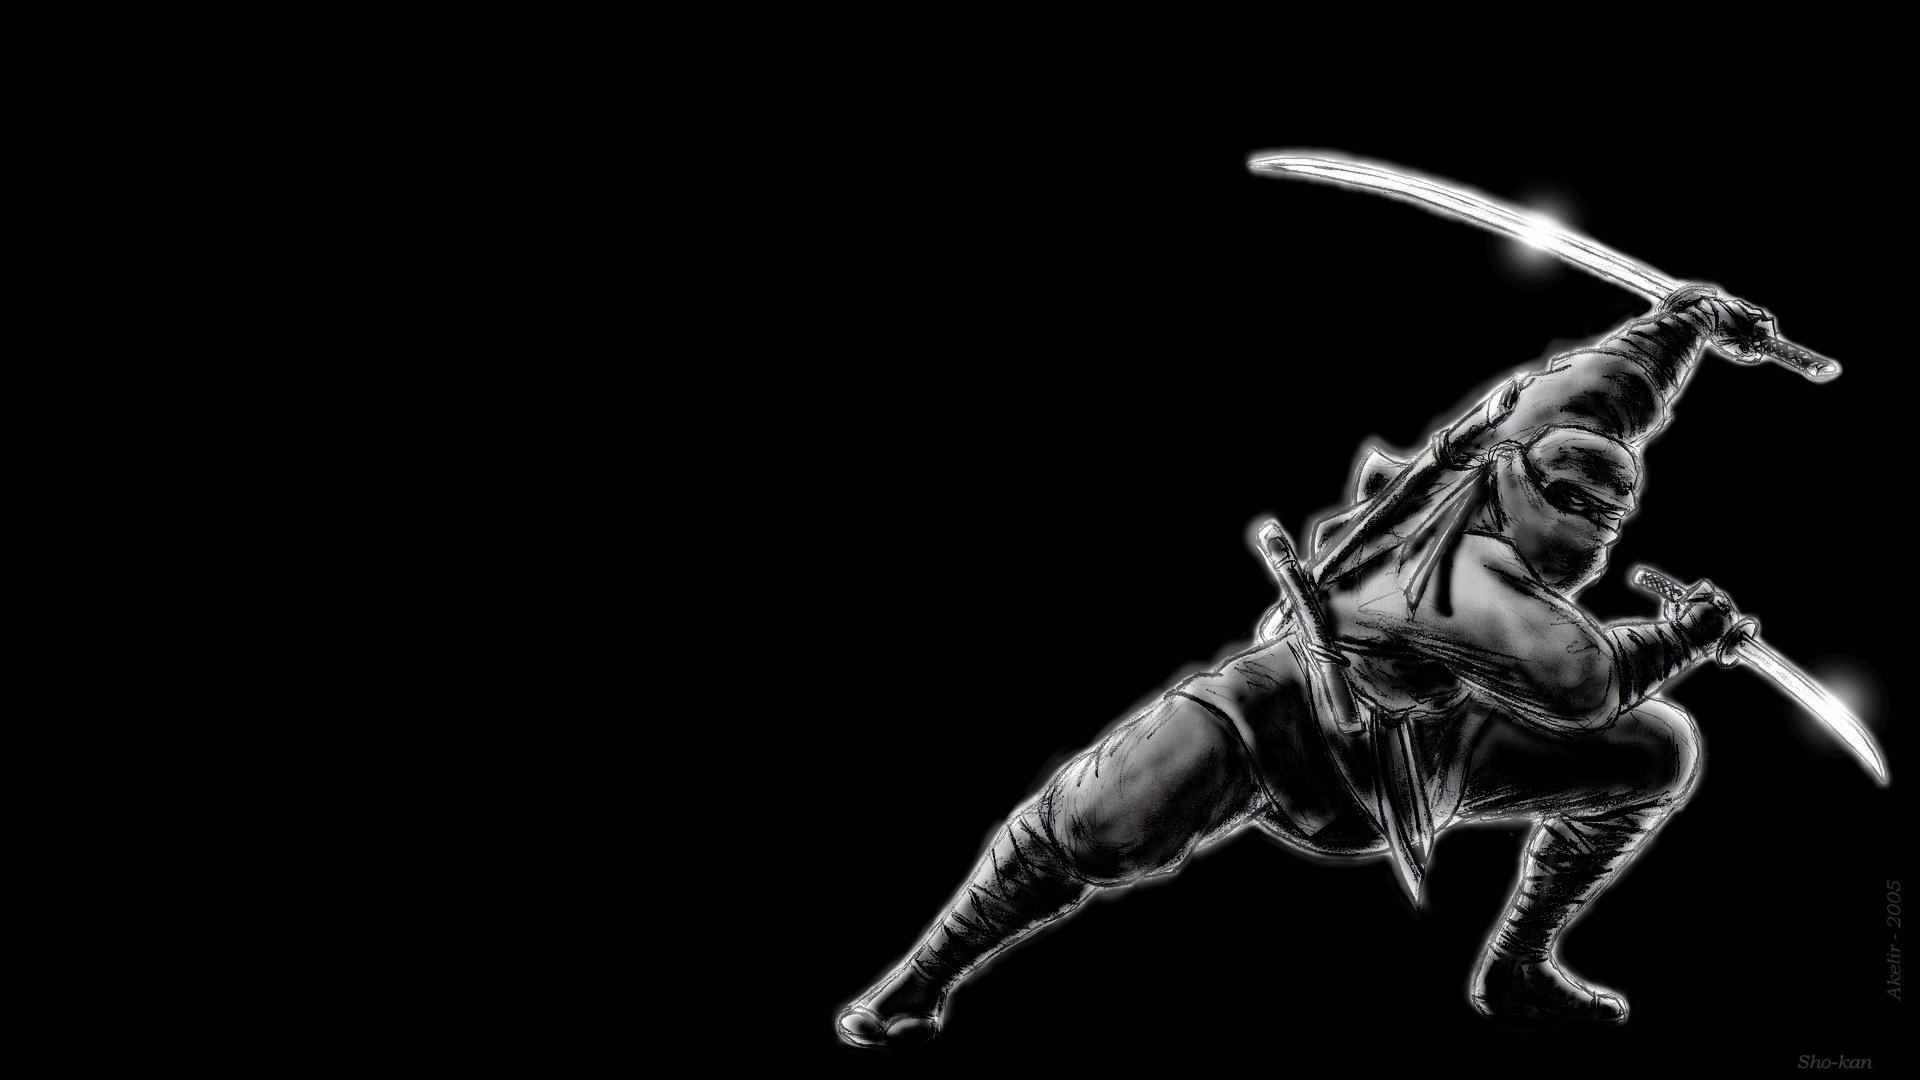 1920 x 1080 · jpeg - Black ninja HD Wallpaper | Background Image | 1920x1080 | ID:172396 ...